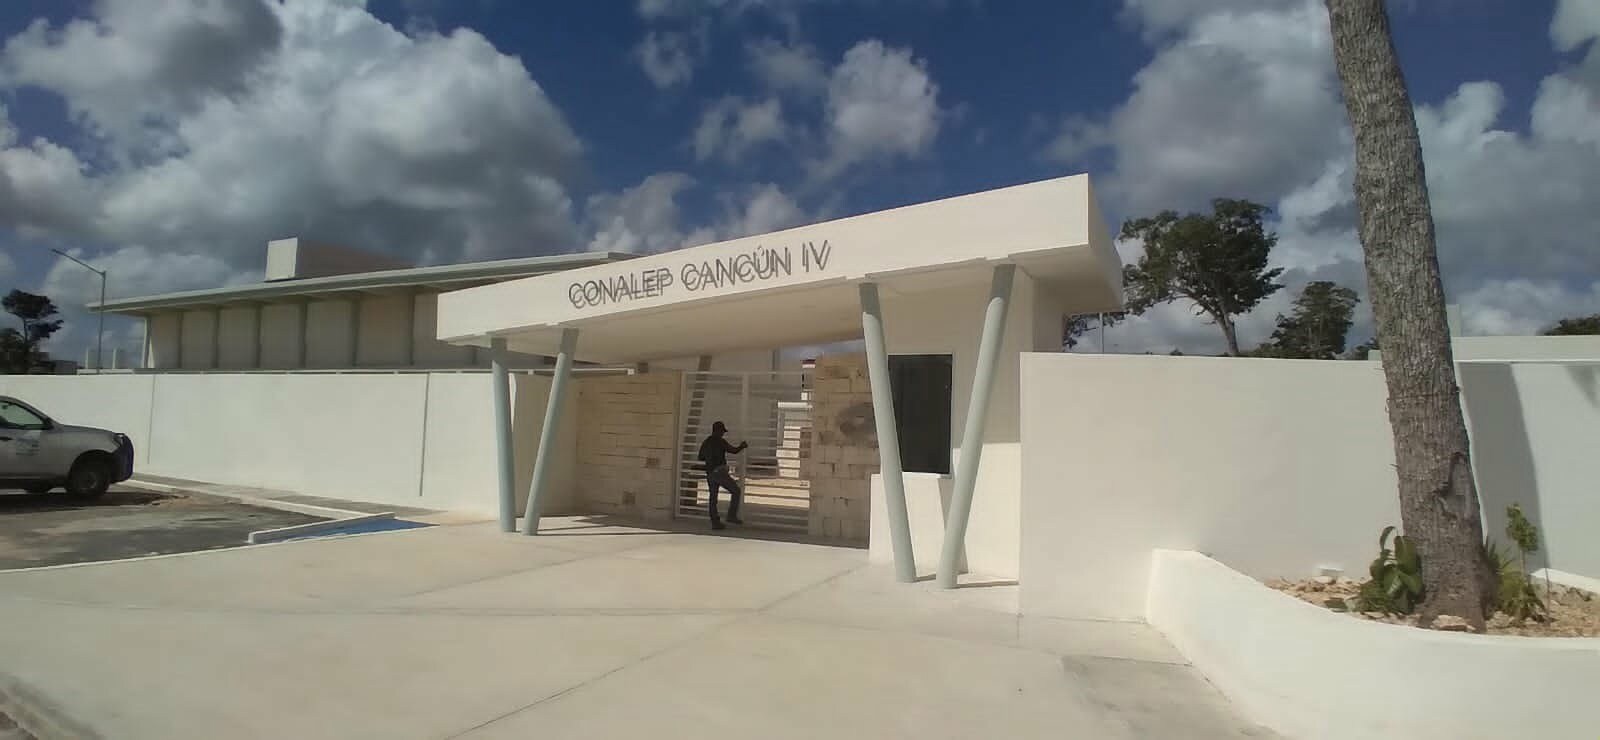 680 estudiantes podrán hacer uso del plantel Conalep IV de Cancún